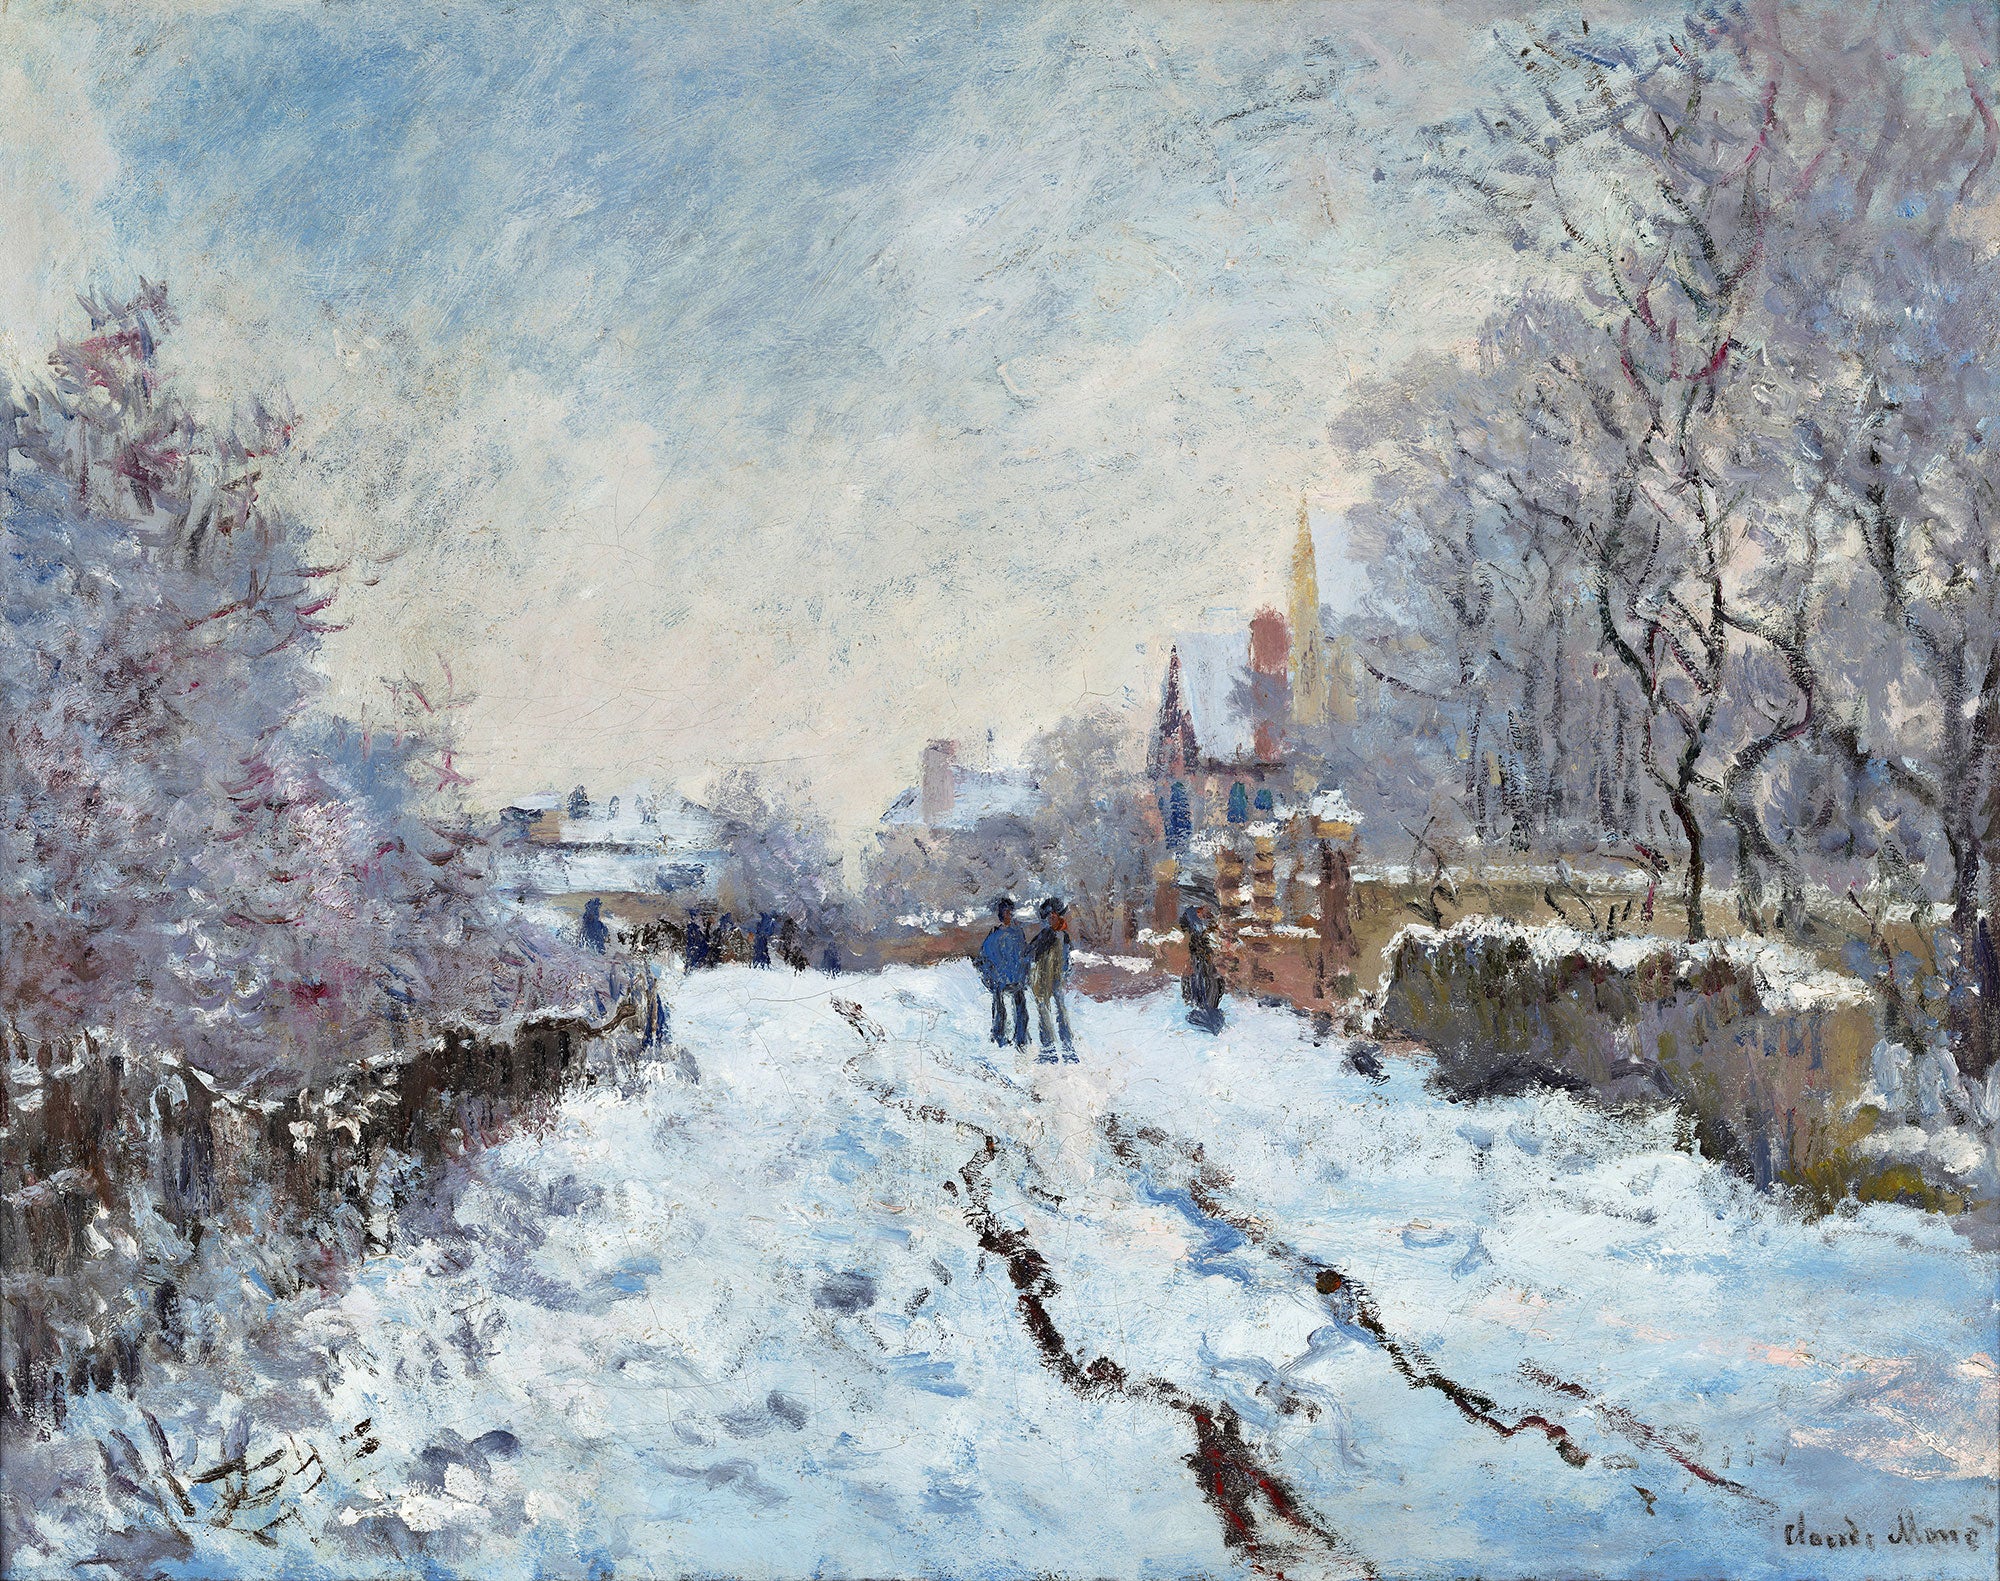 La belleza del paisaje invernal en "Escena de la nieve en Argenteuil" de Claude Monet